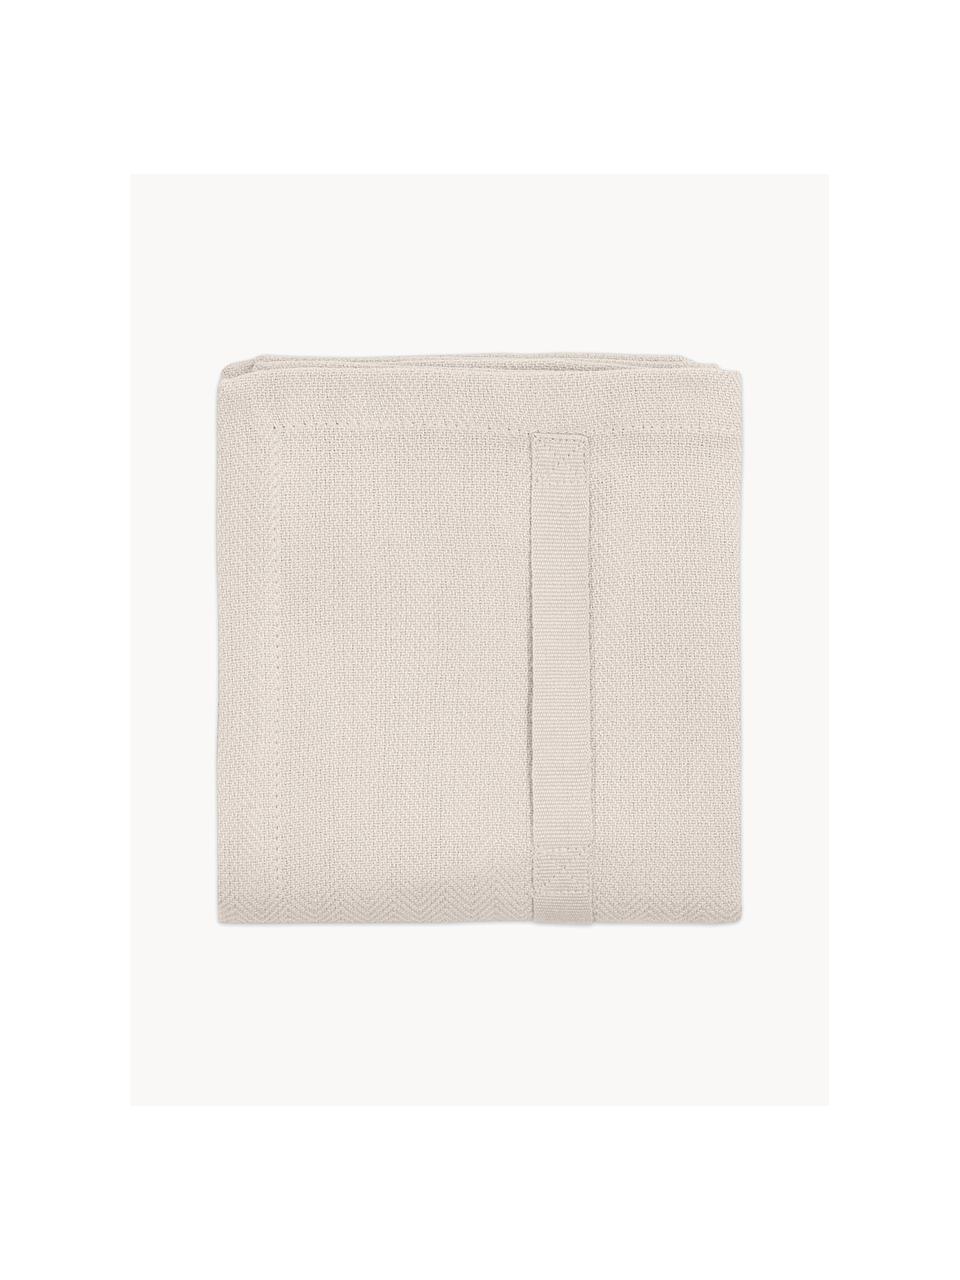 Paño de cocina de algodón ecológico Tangled, 100% algodón ecológico con certificado GOTS, Beige claro, An 53 x L 86 cm